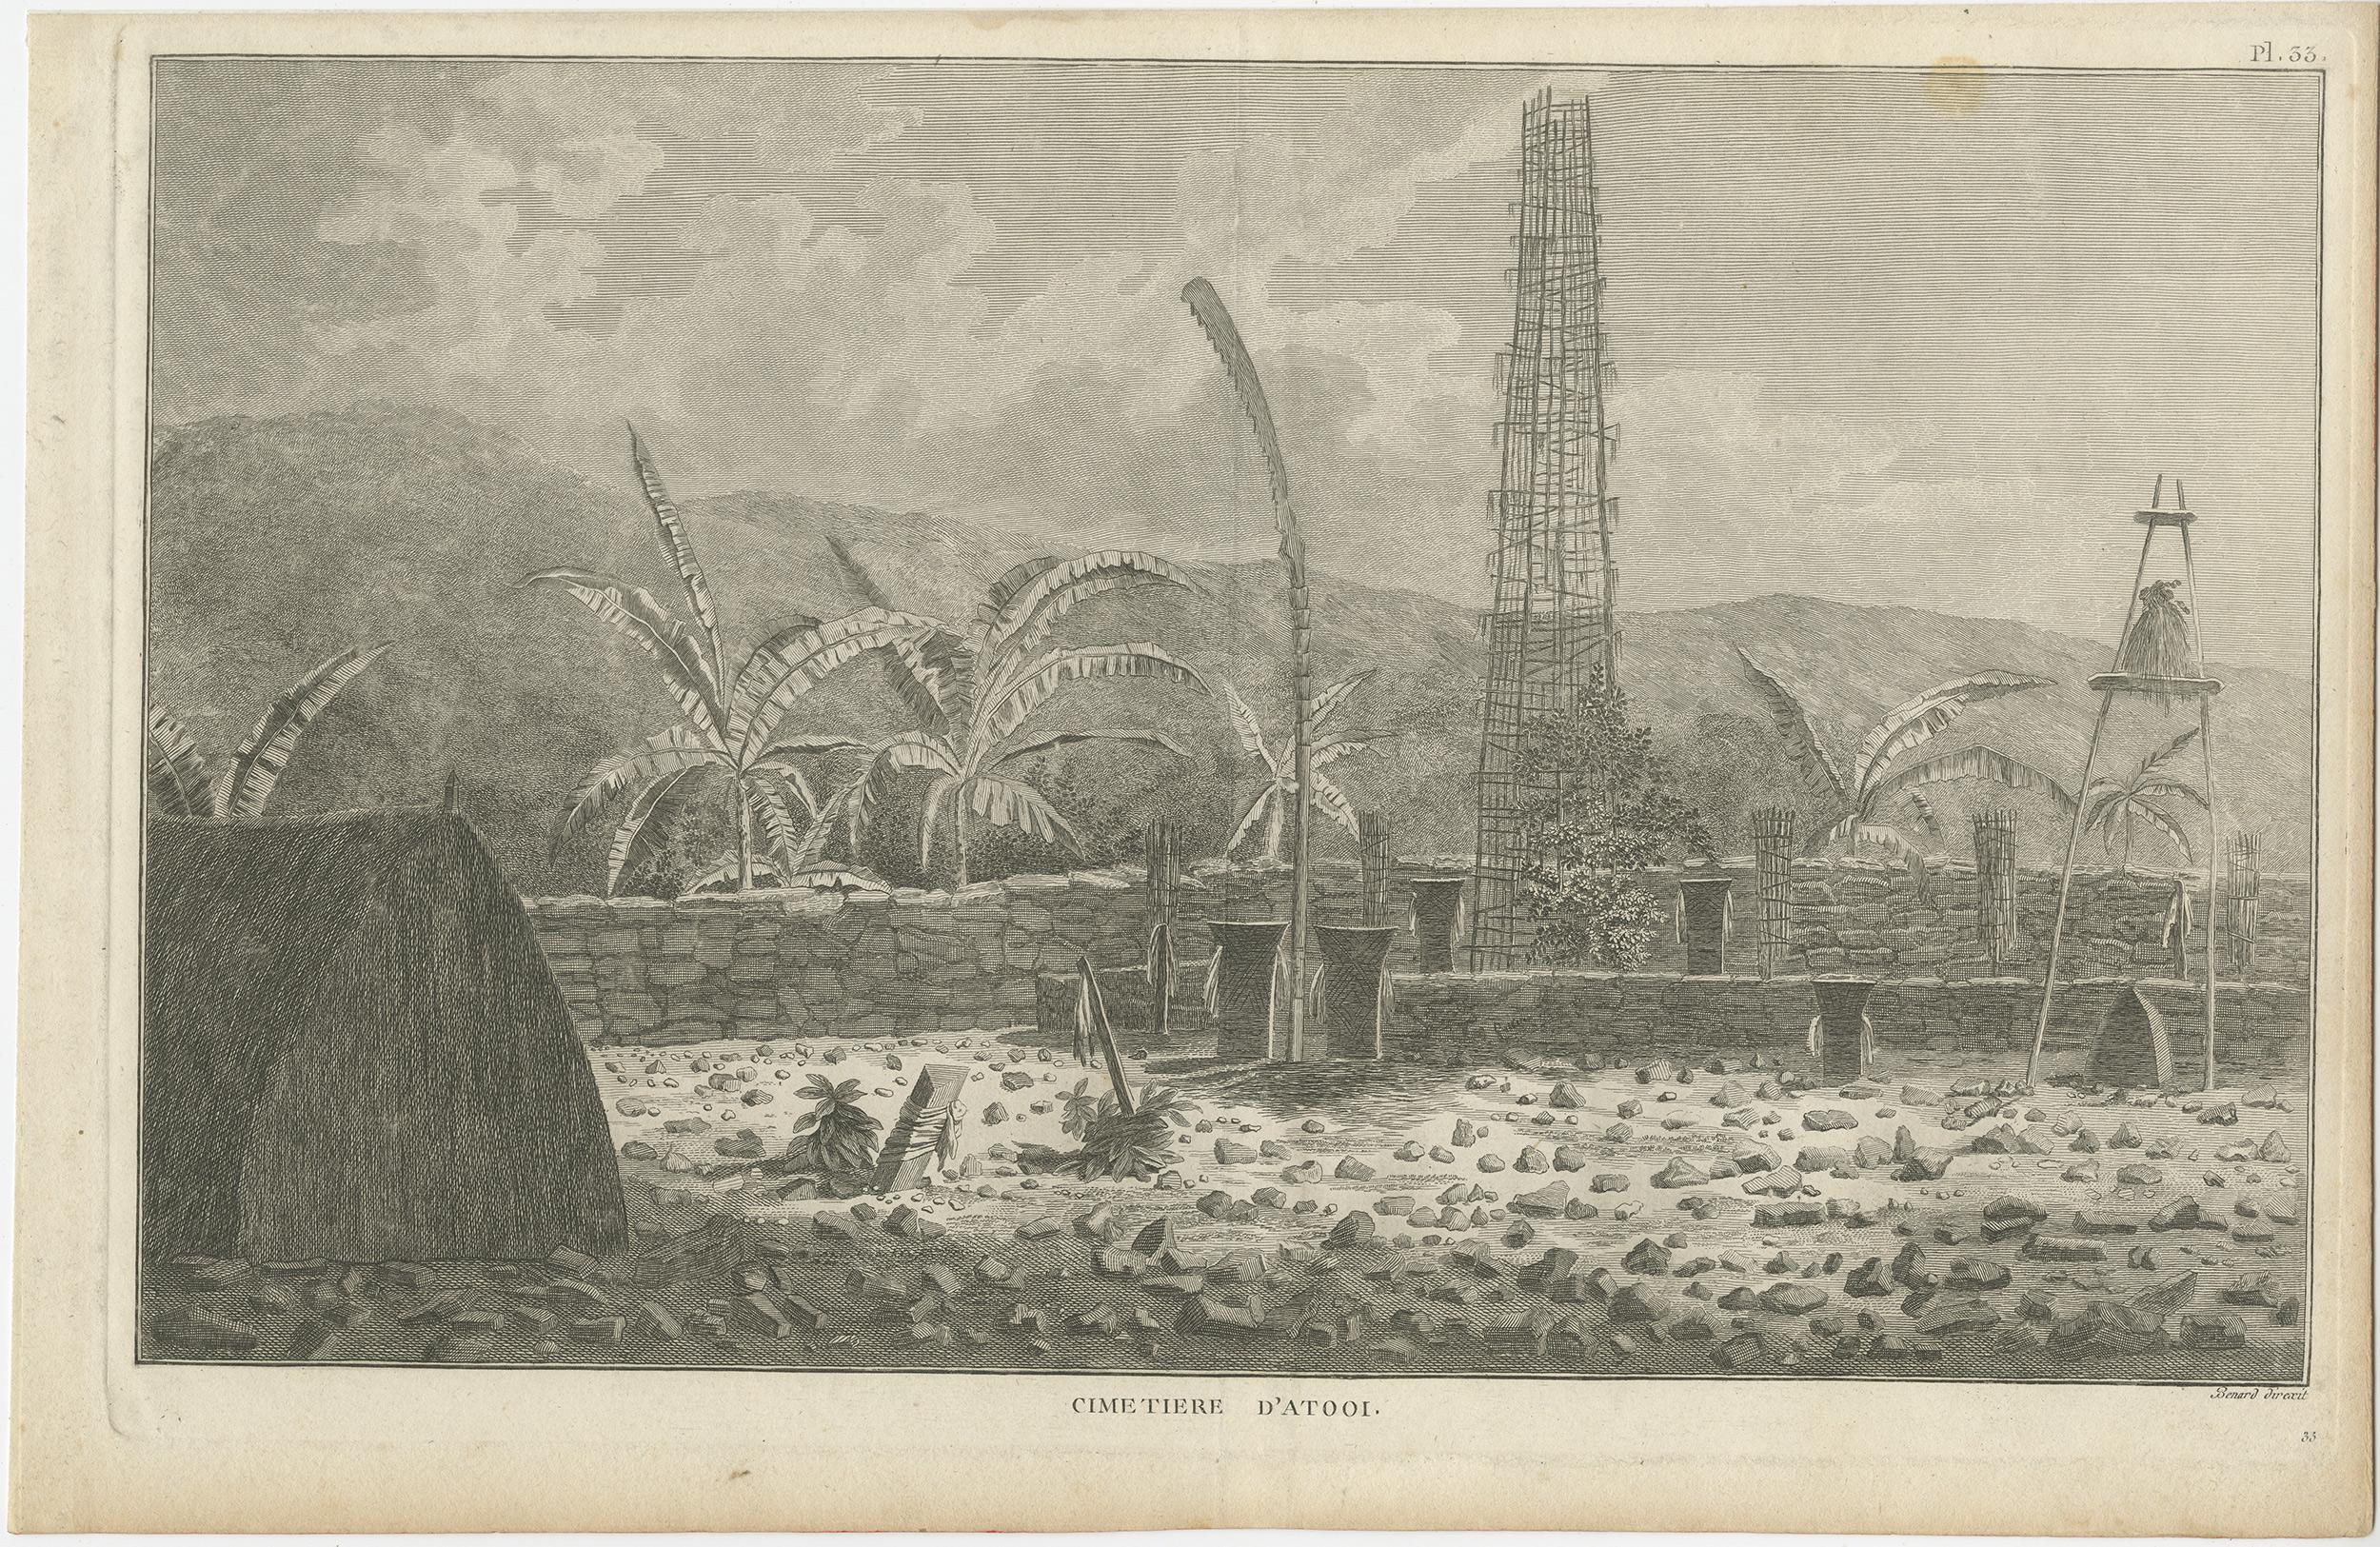 Antique print titled 'Cimetiere d'Atooi'. View of a sacred cemetery on Kauai, Hawaii (Atooi). This print originates from 'Cartes et figures du troisième voyage de Cook' published 1785.